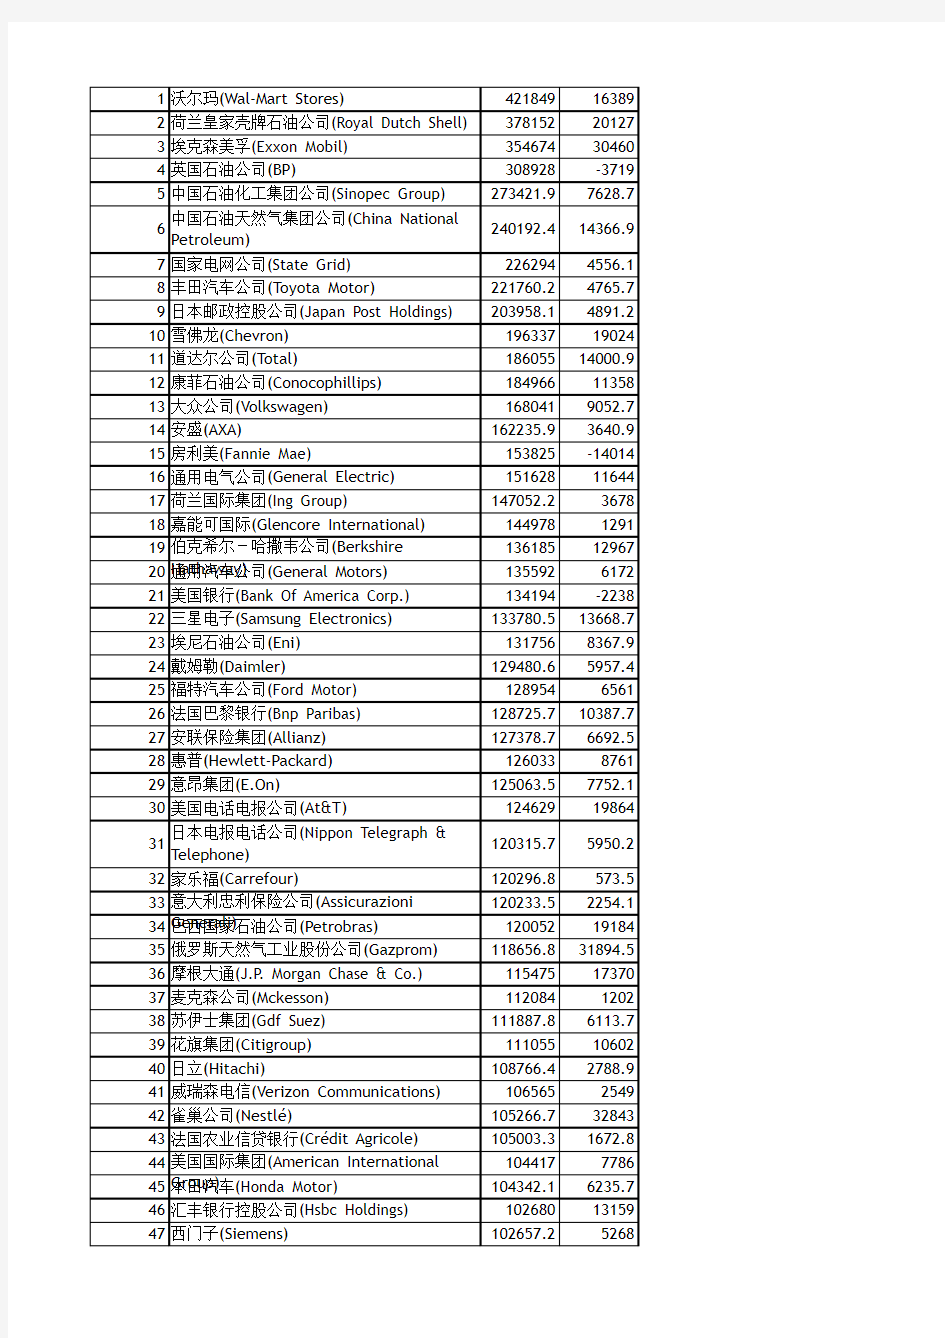 2011世界500强在中国的投资情况